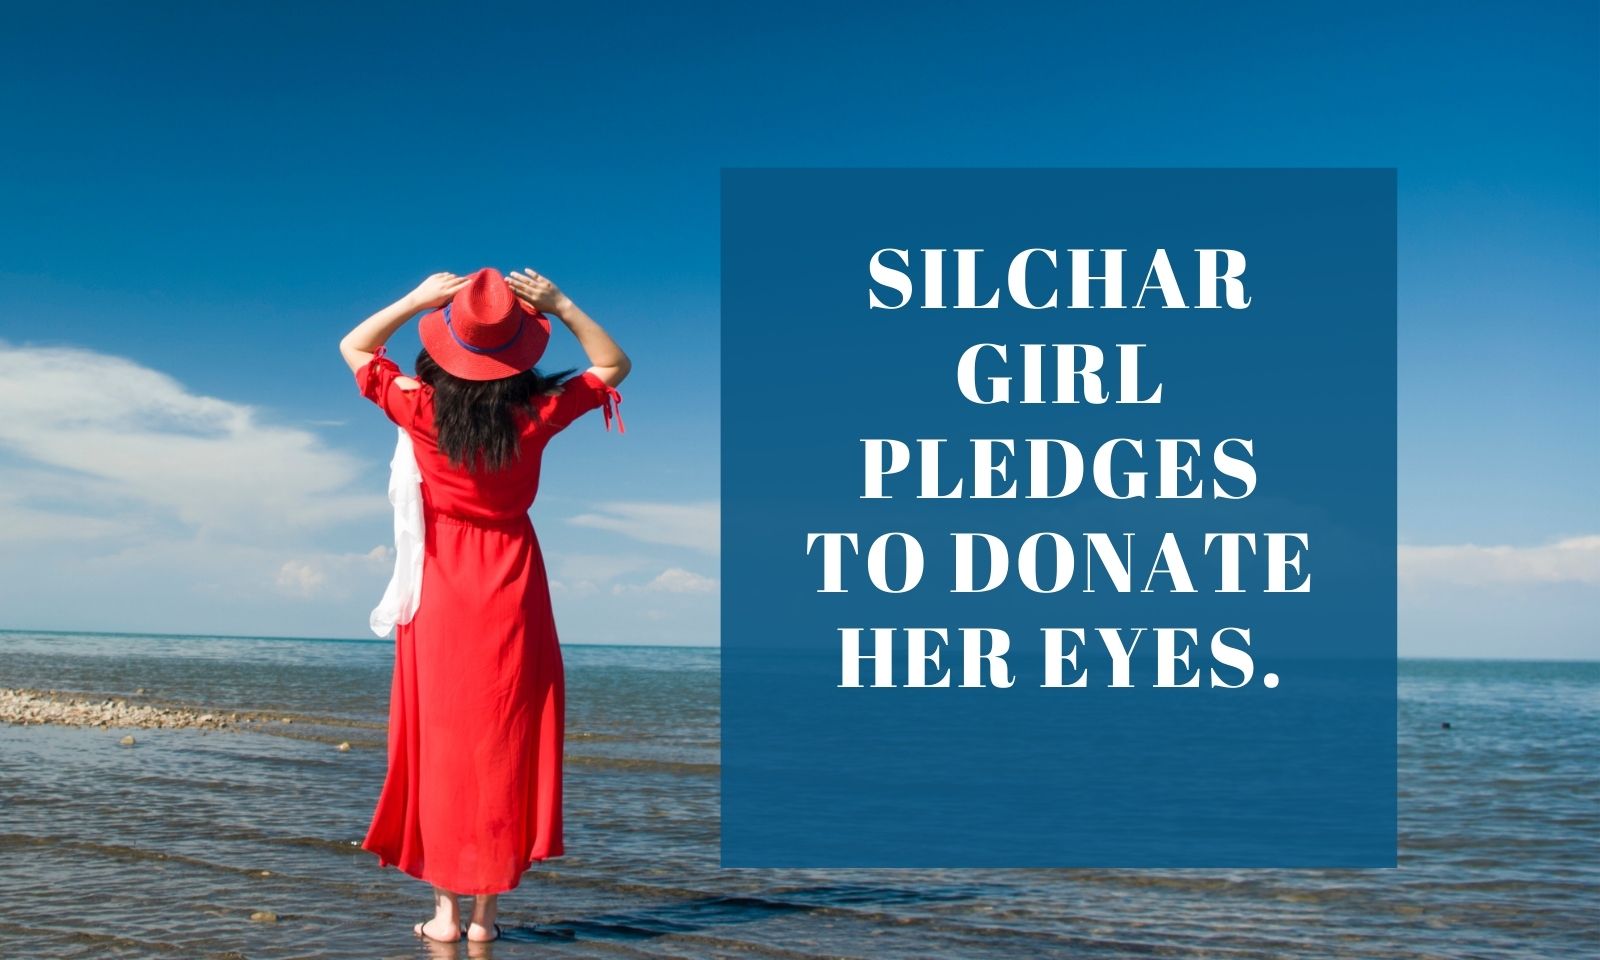 Silchar girl pledges to donate her eyes